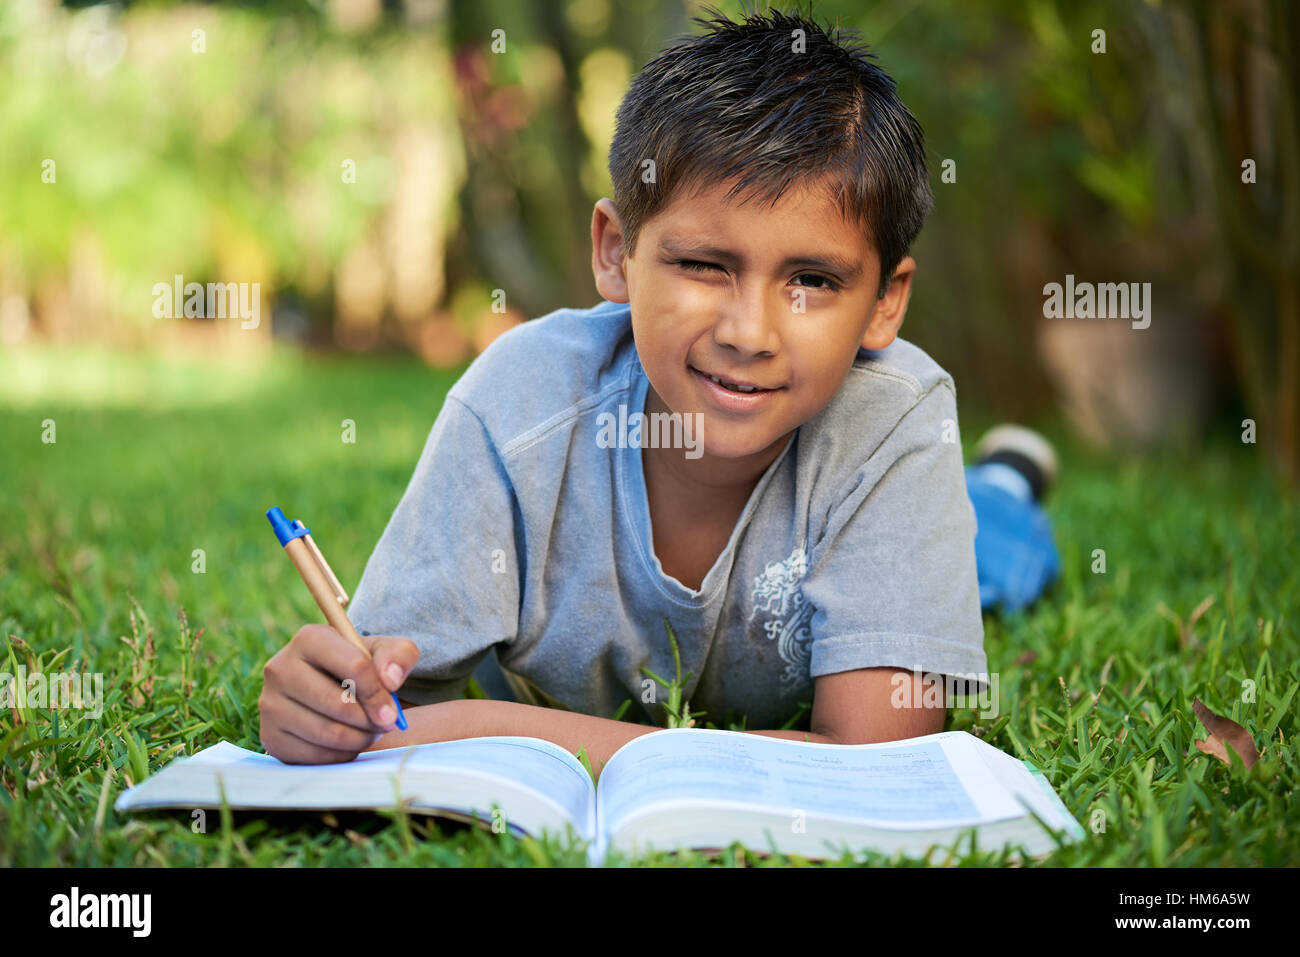 kleiner Junge mit Buch studieren lag auf dem grünen Rasen Stockfoto